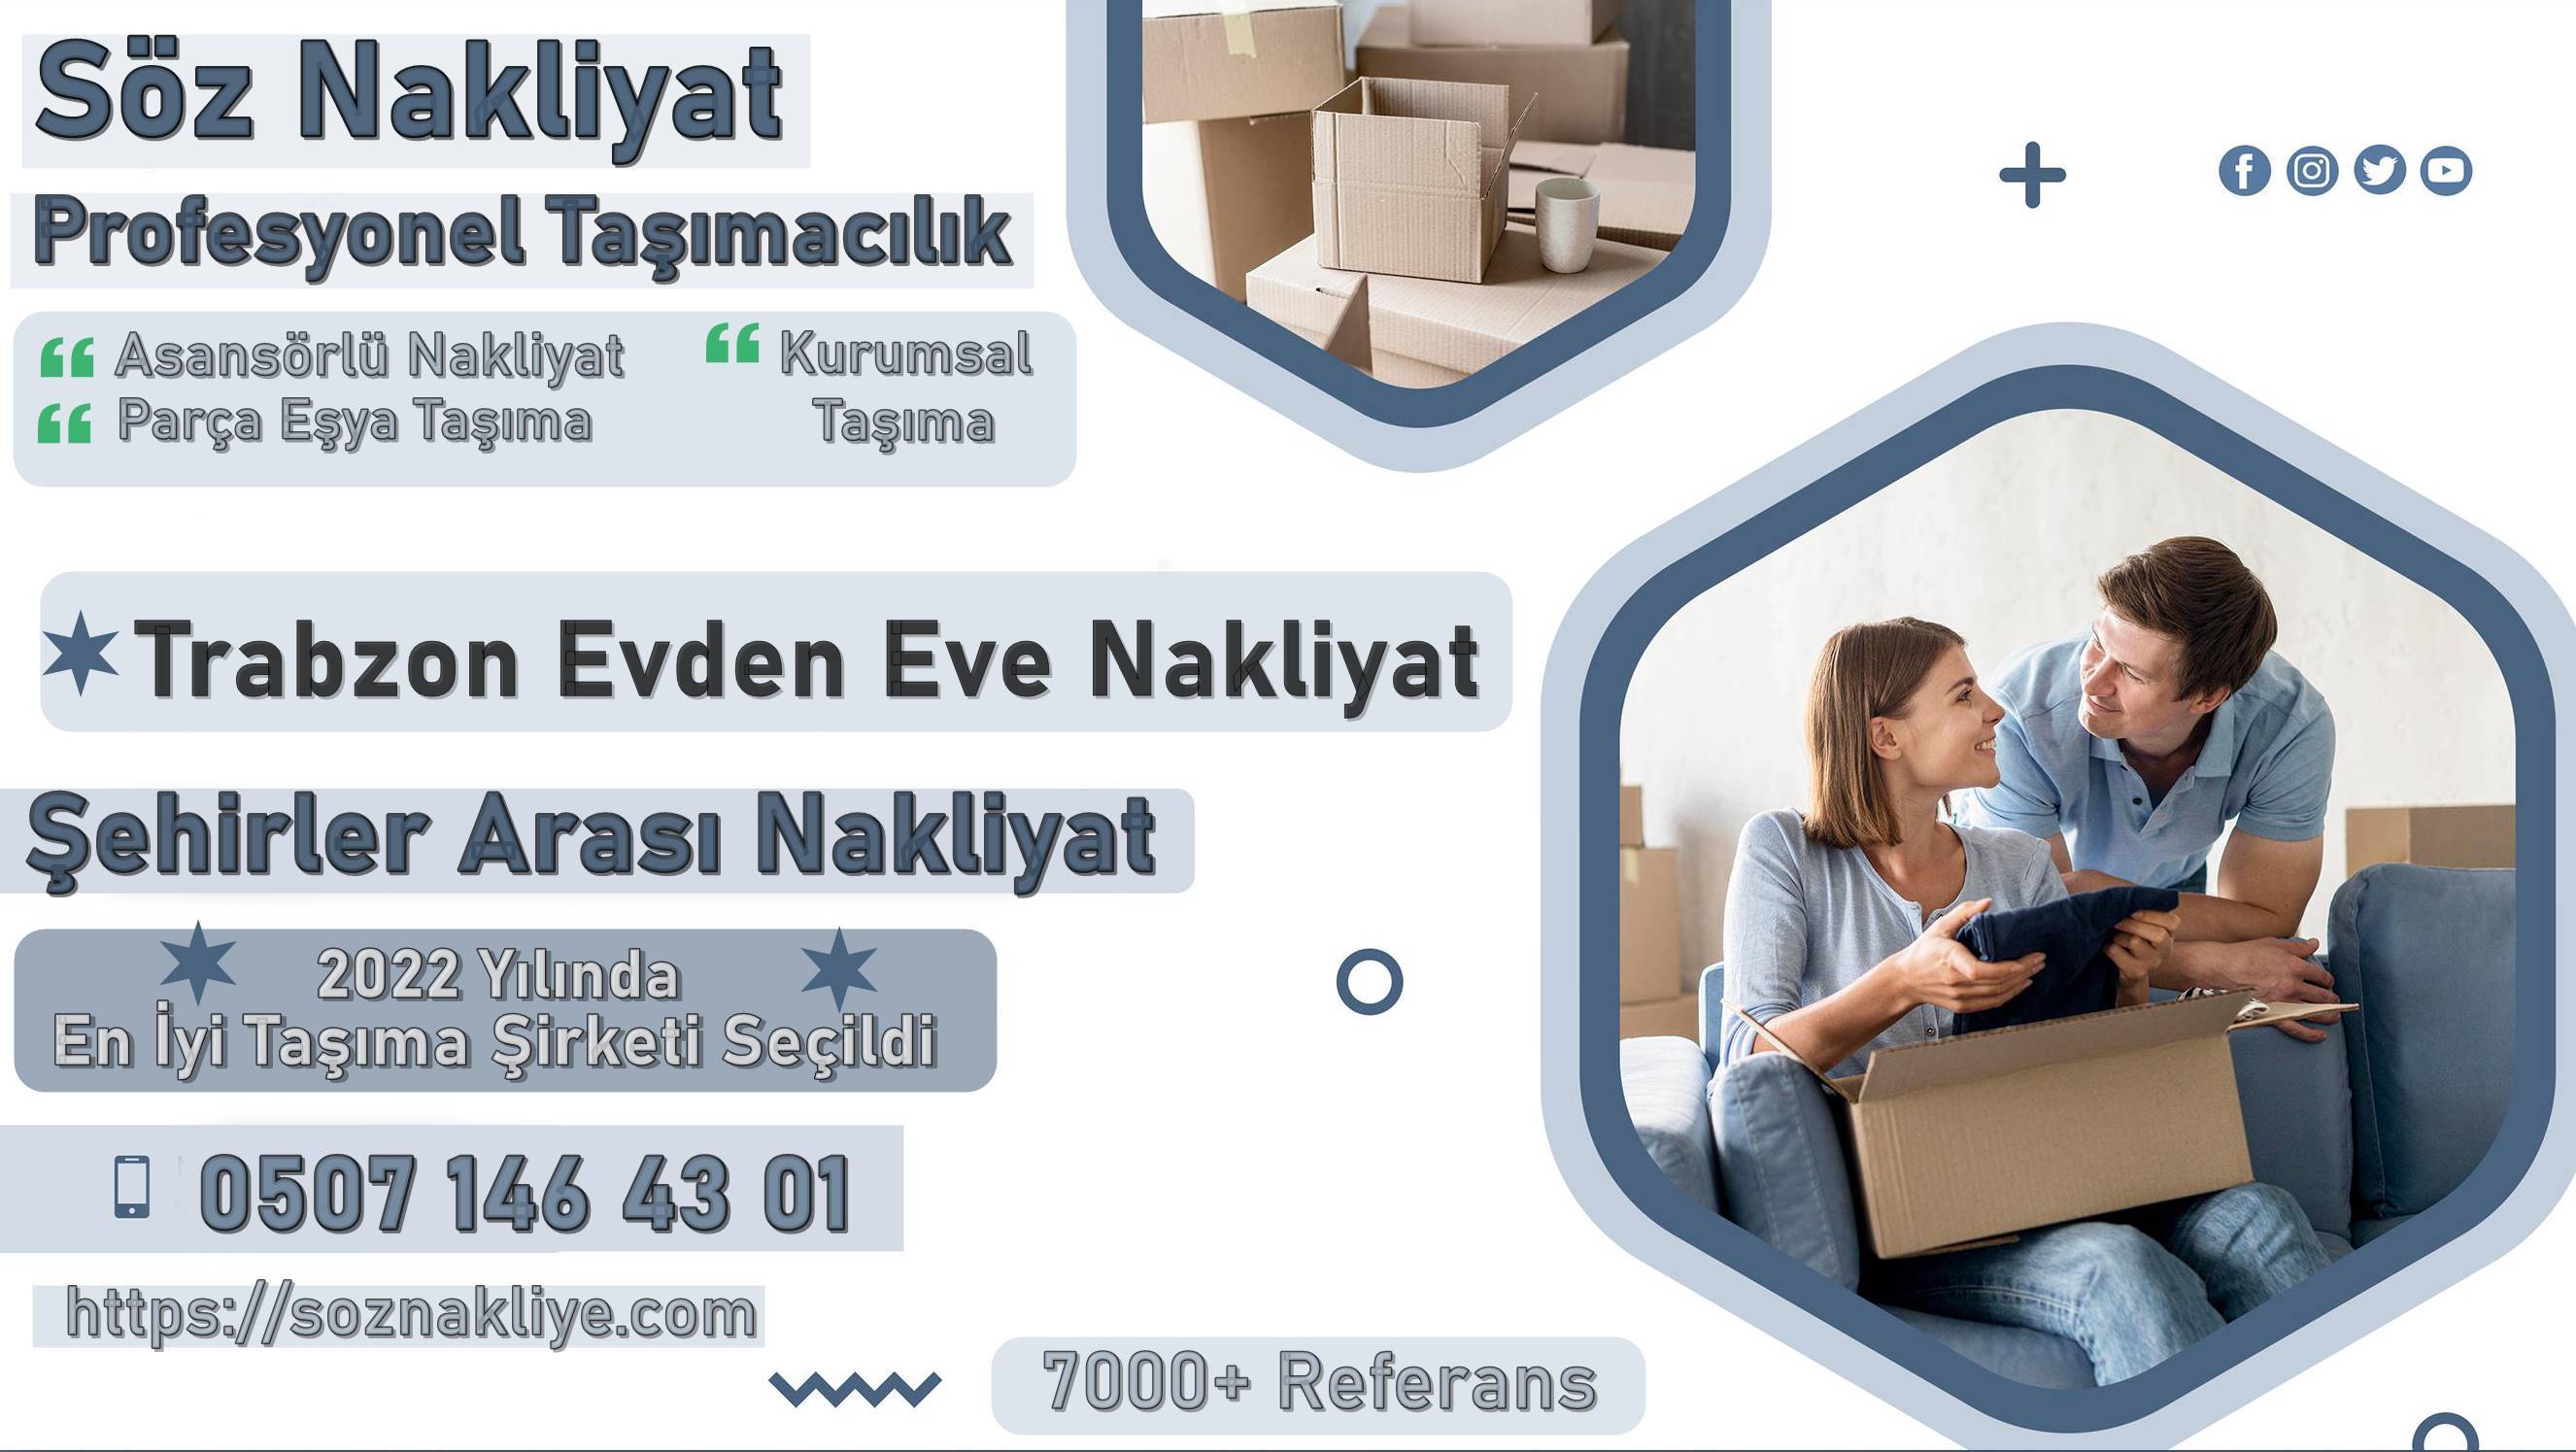 Trabzon Evden Eve Nakliyat